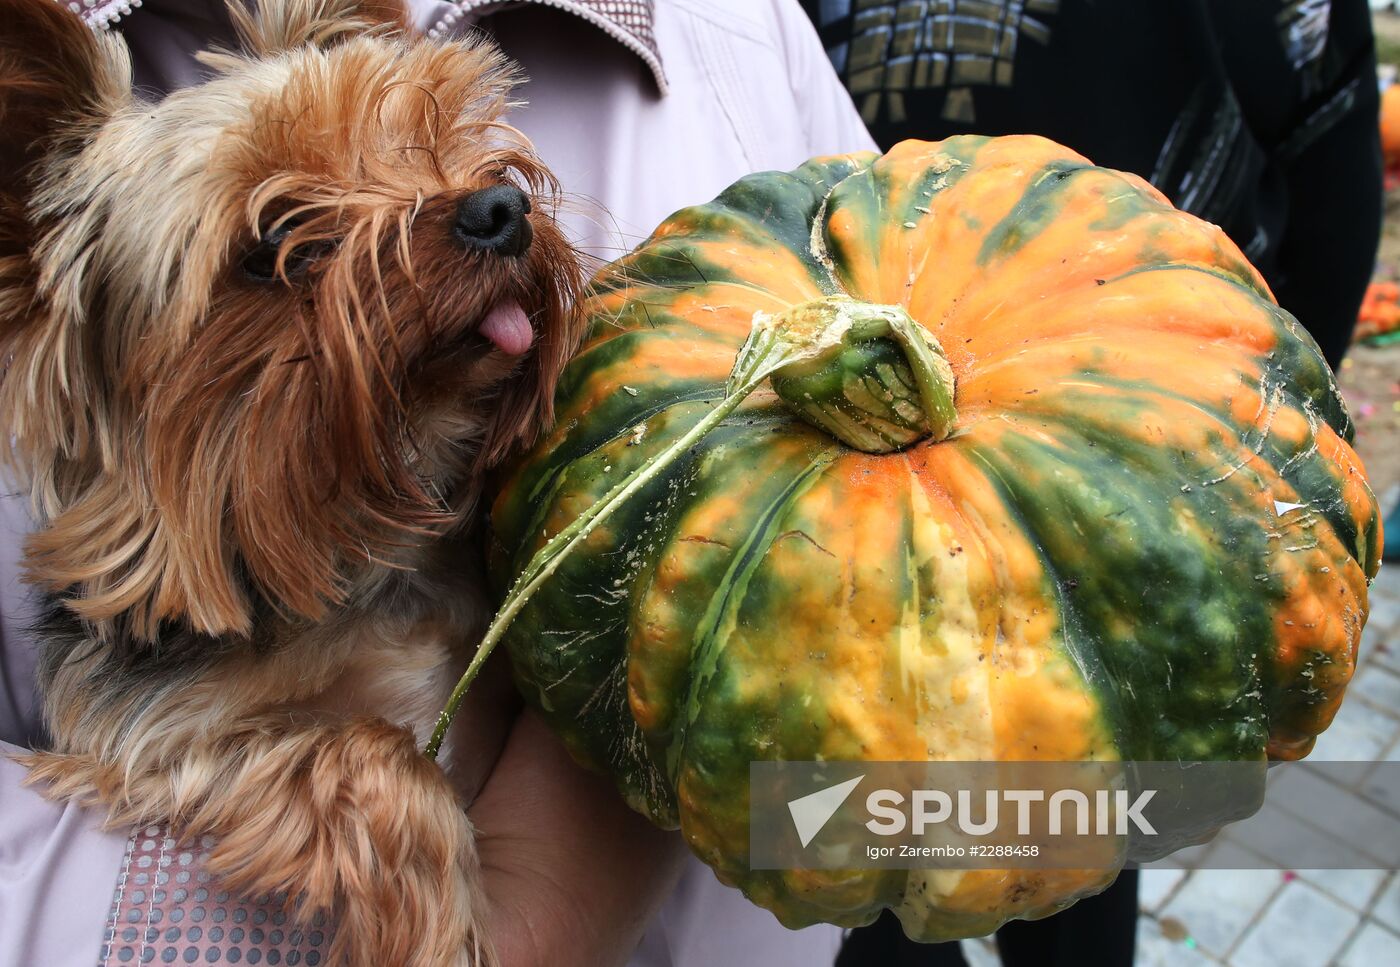 Golden Pumpkin festival in Kaliningrad Region